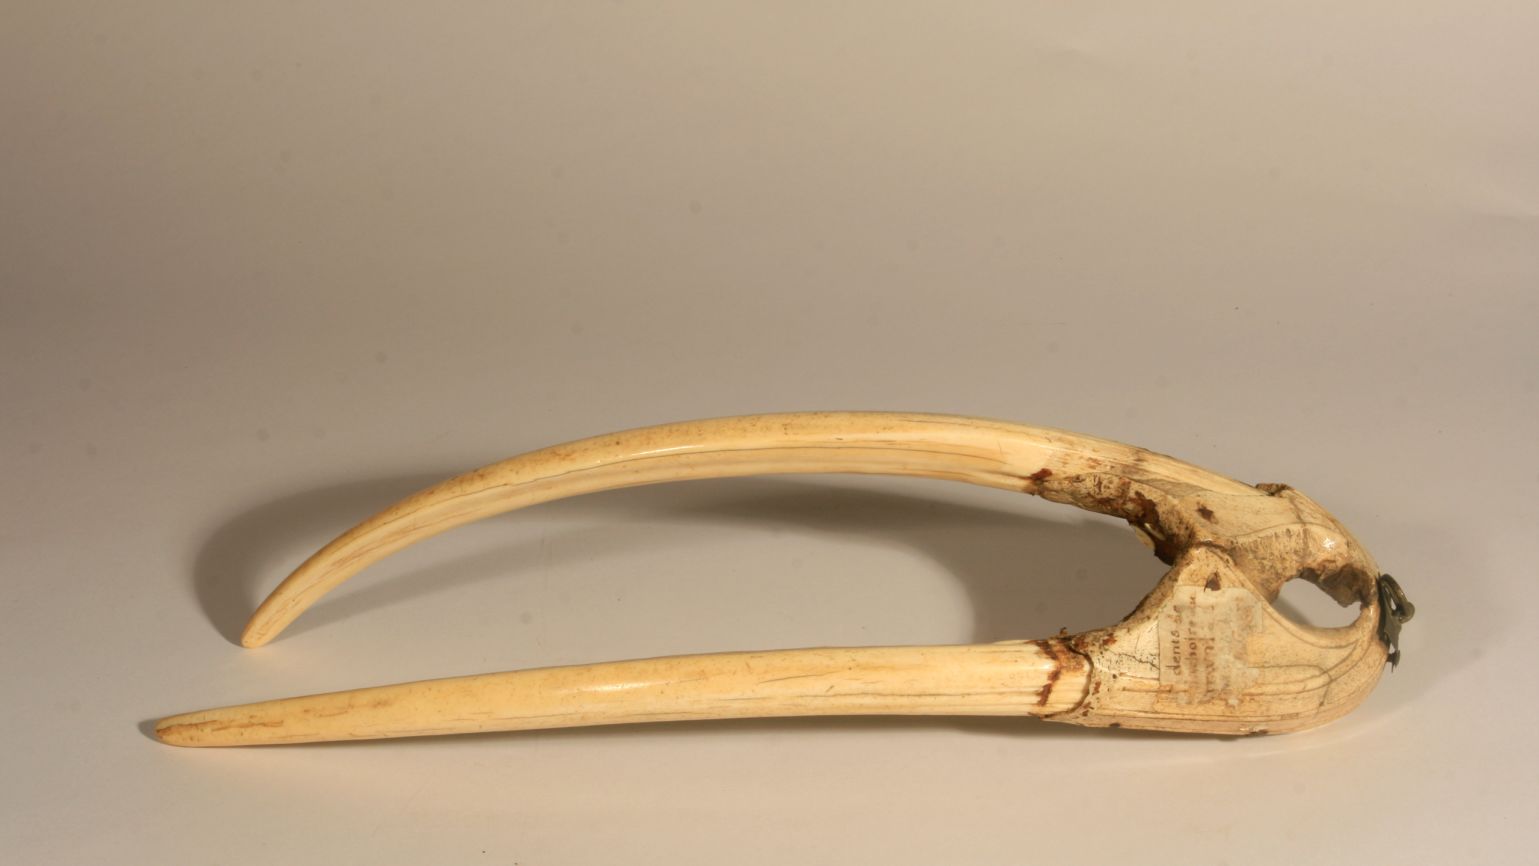 Рострум (череп) з бивнями мамонта, який вчені використовували під час дослідження. Дата: близько 1200-1400 рр. Фото: Musées du Mans.